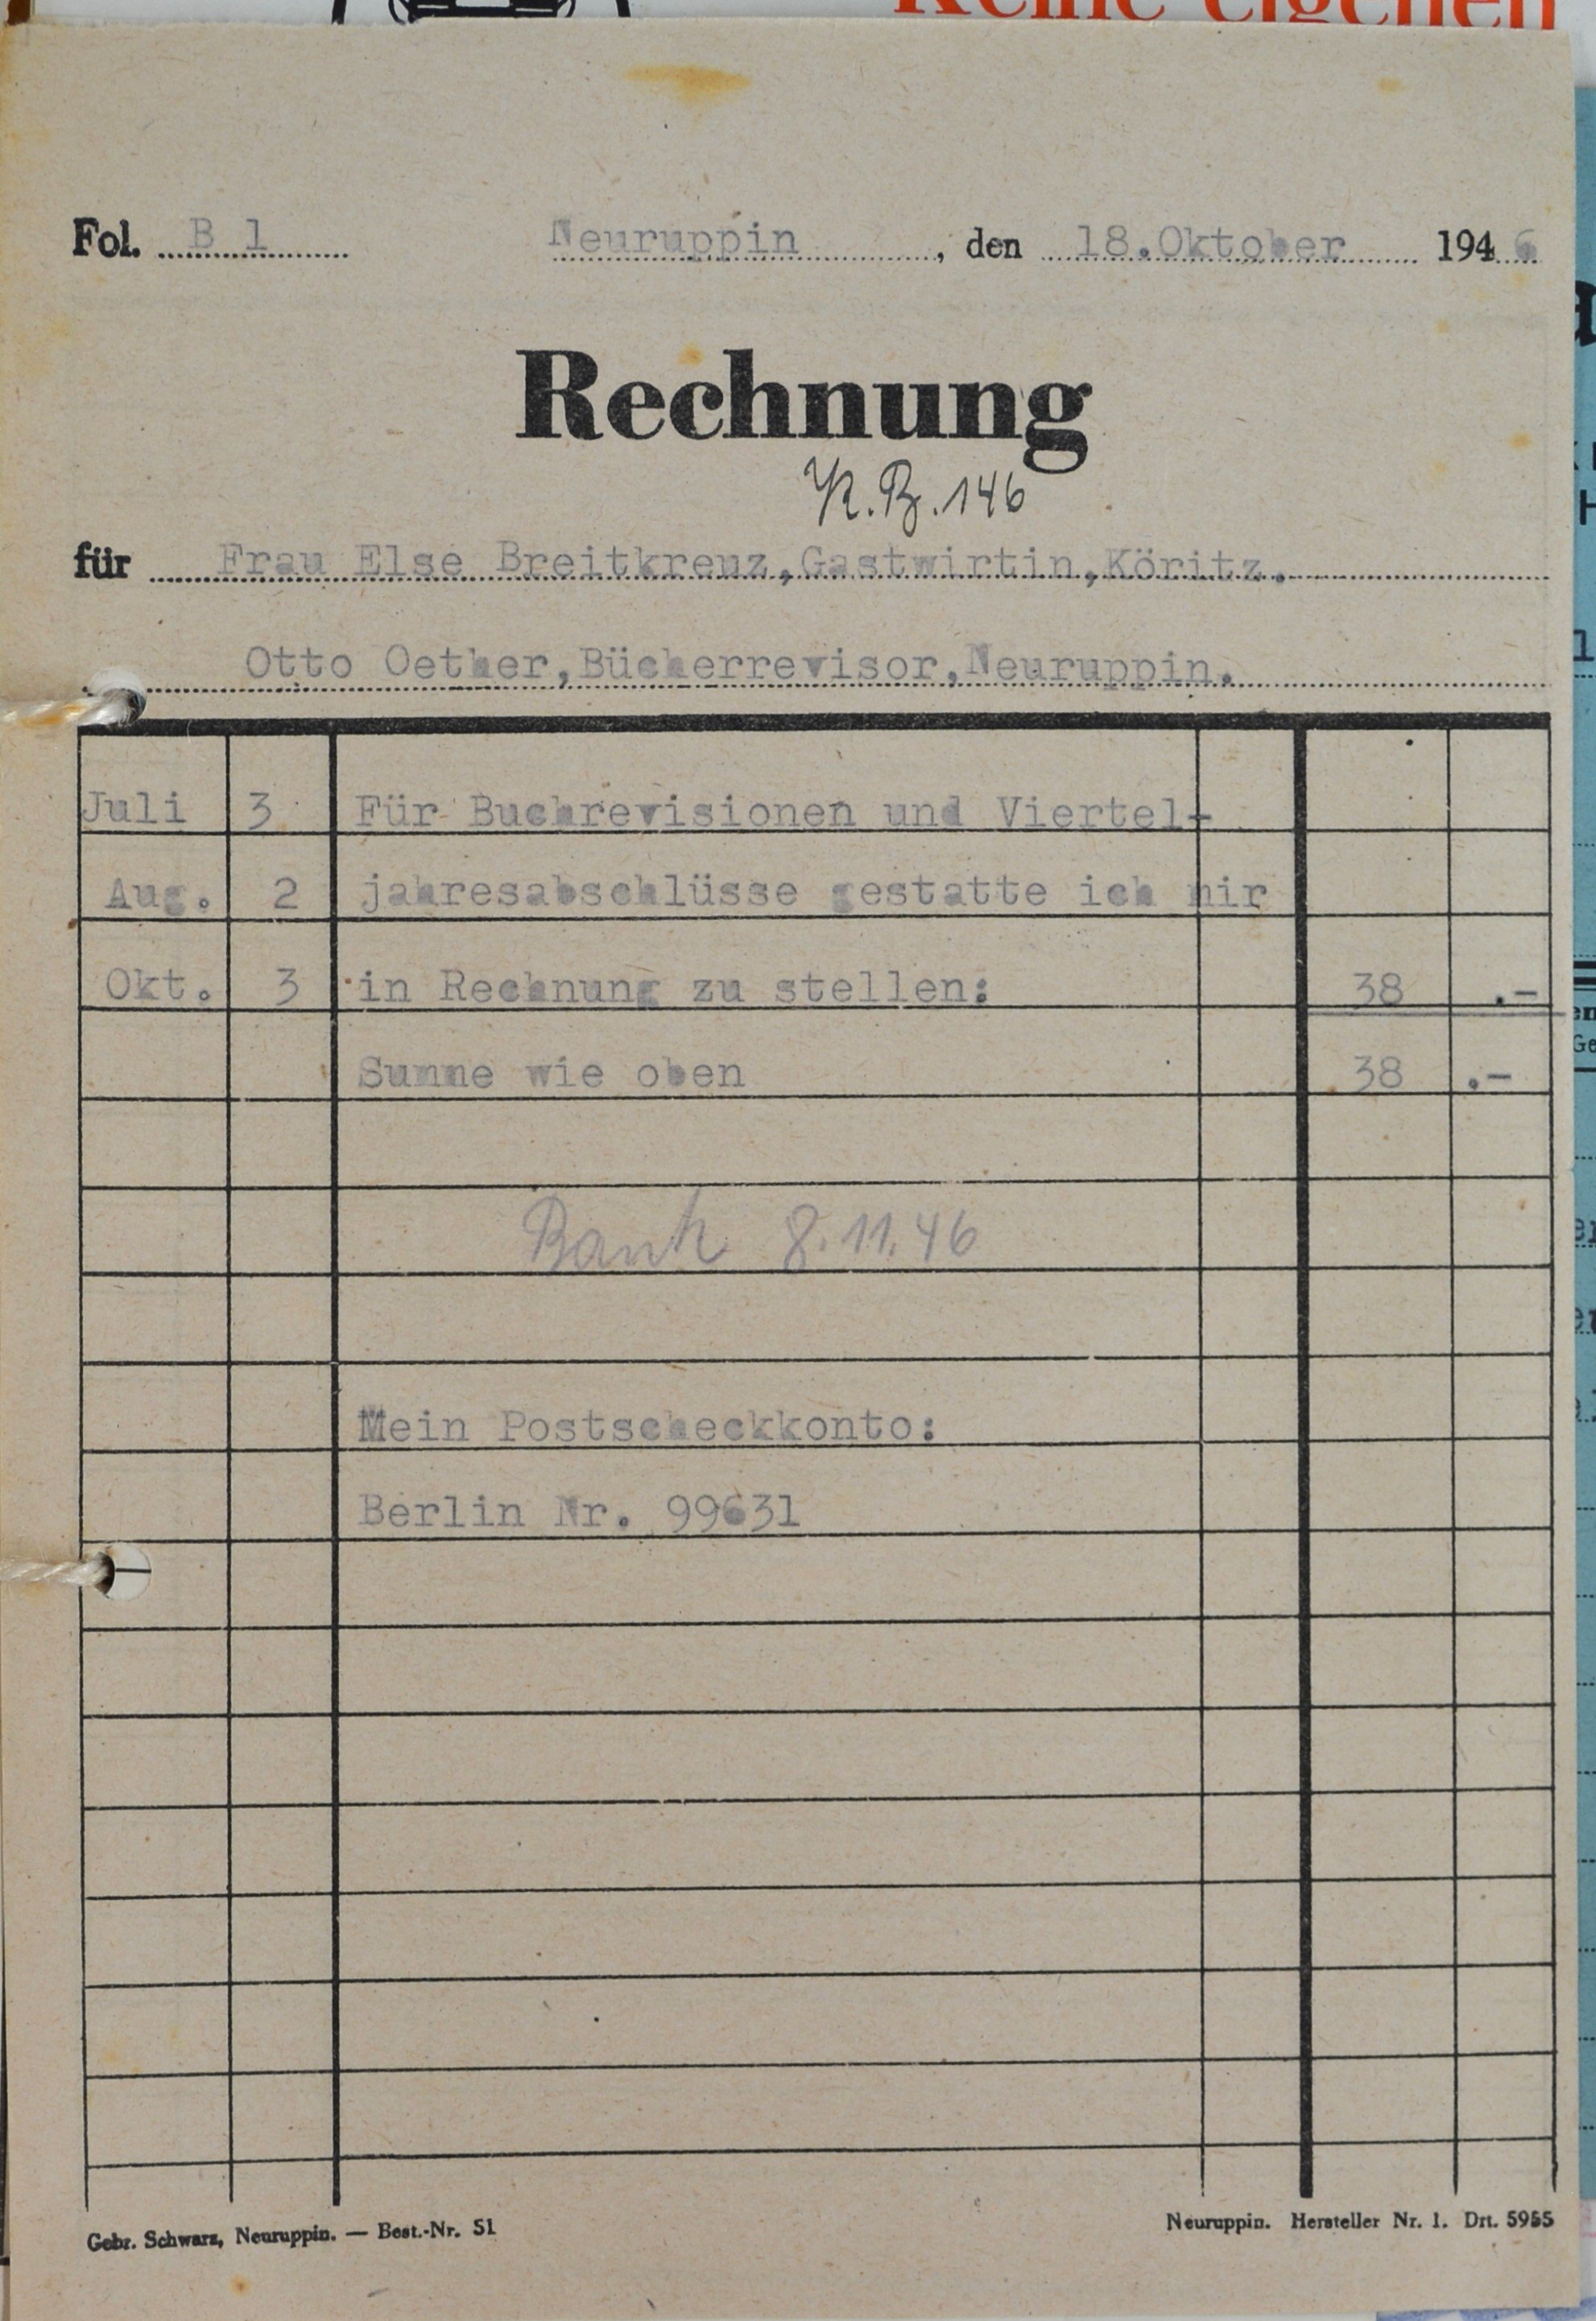 Rechnung von dem Bücherrevisor Otto Oether aus Neuruppin für Wilhelm Breitkreuz (DDR Geschichtsmuseum im Dokumentationszentrum Perleberg CC BY-SA)